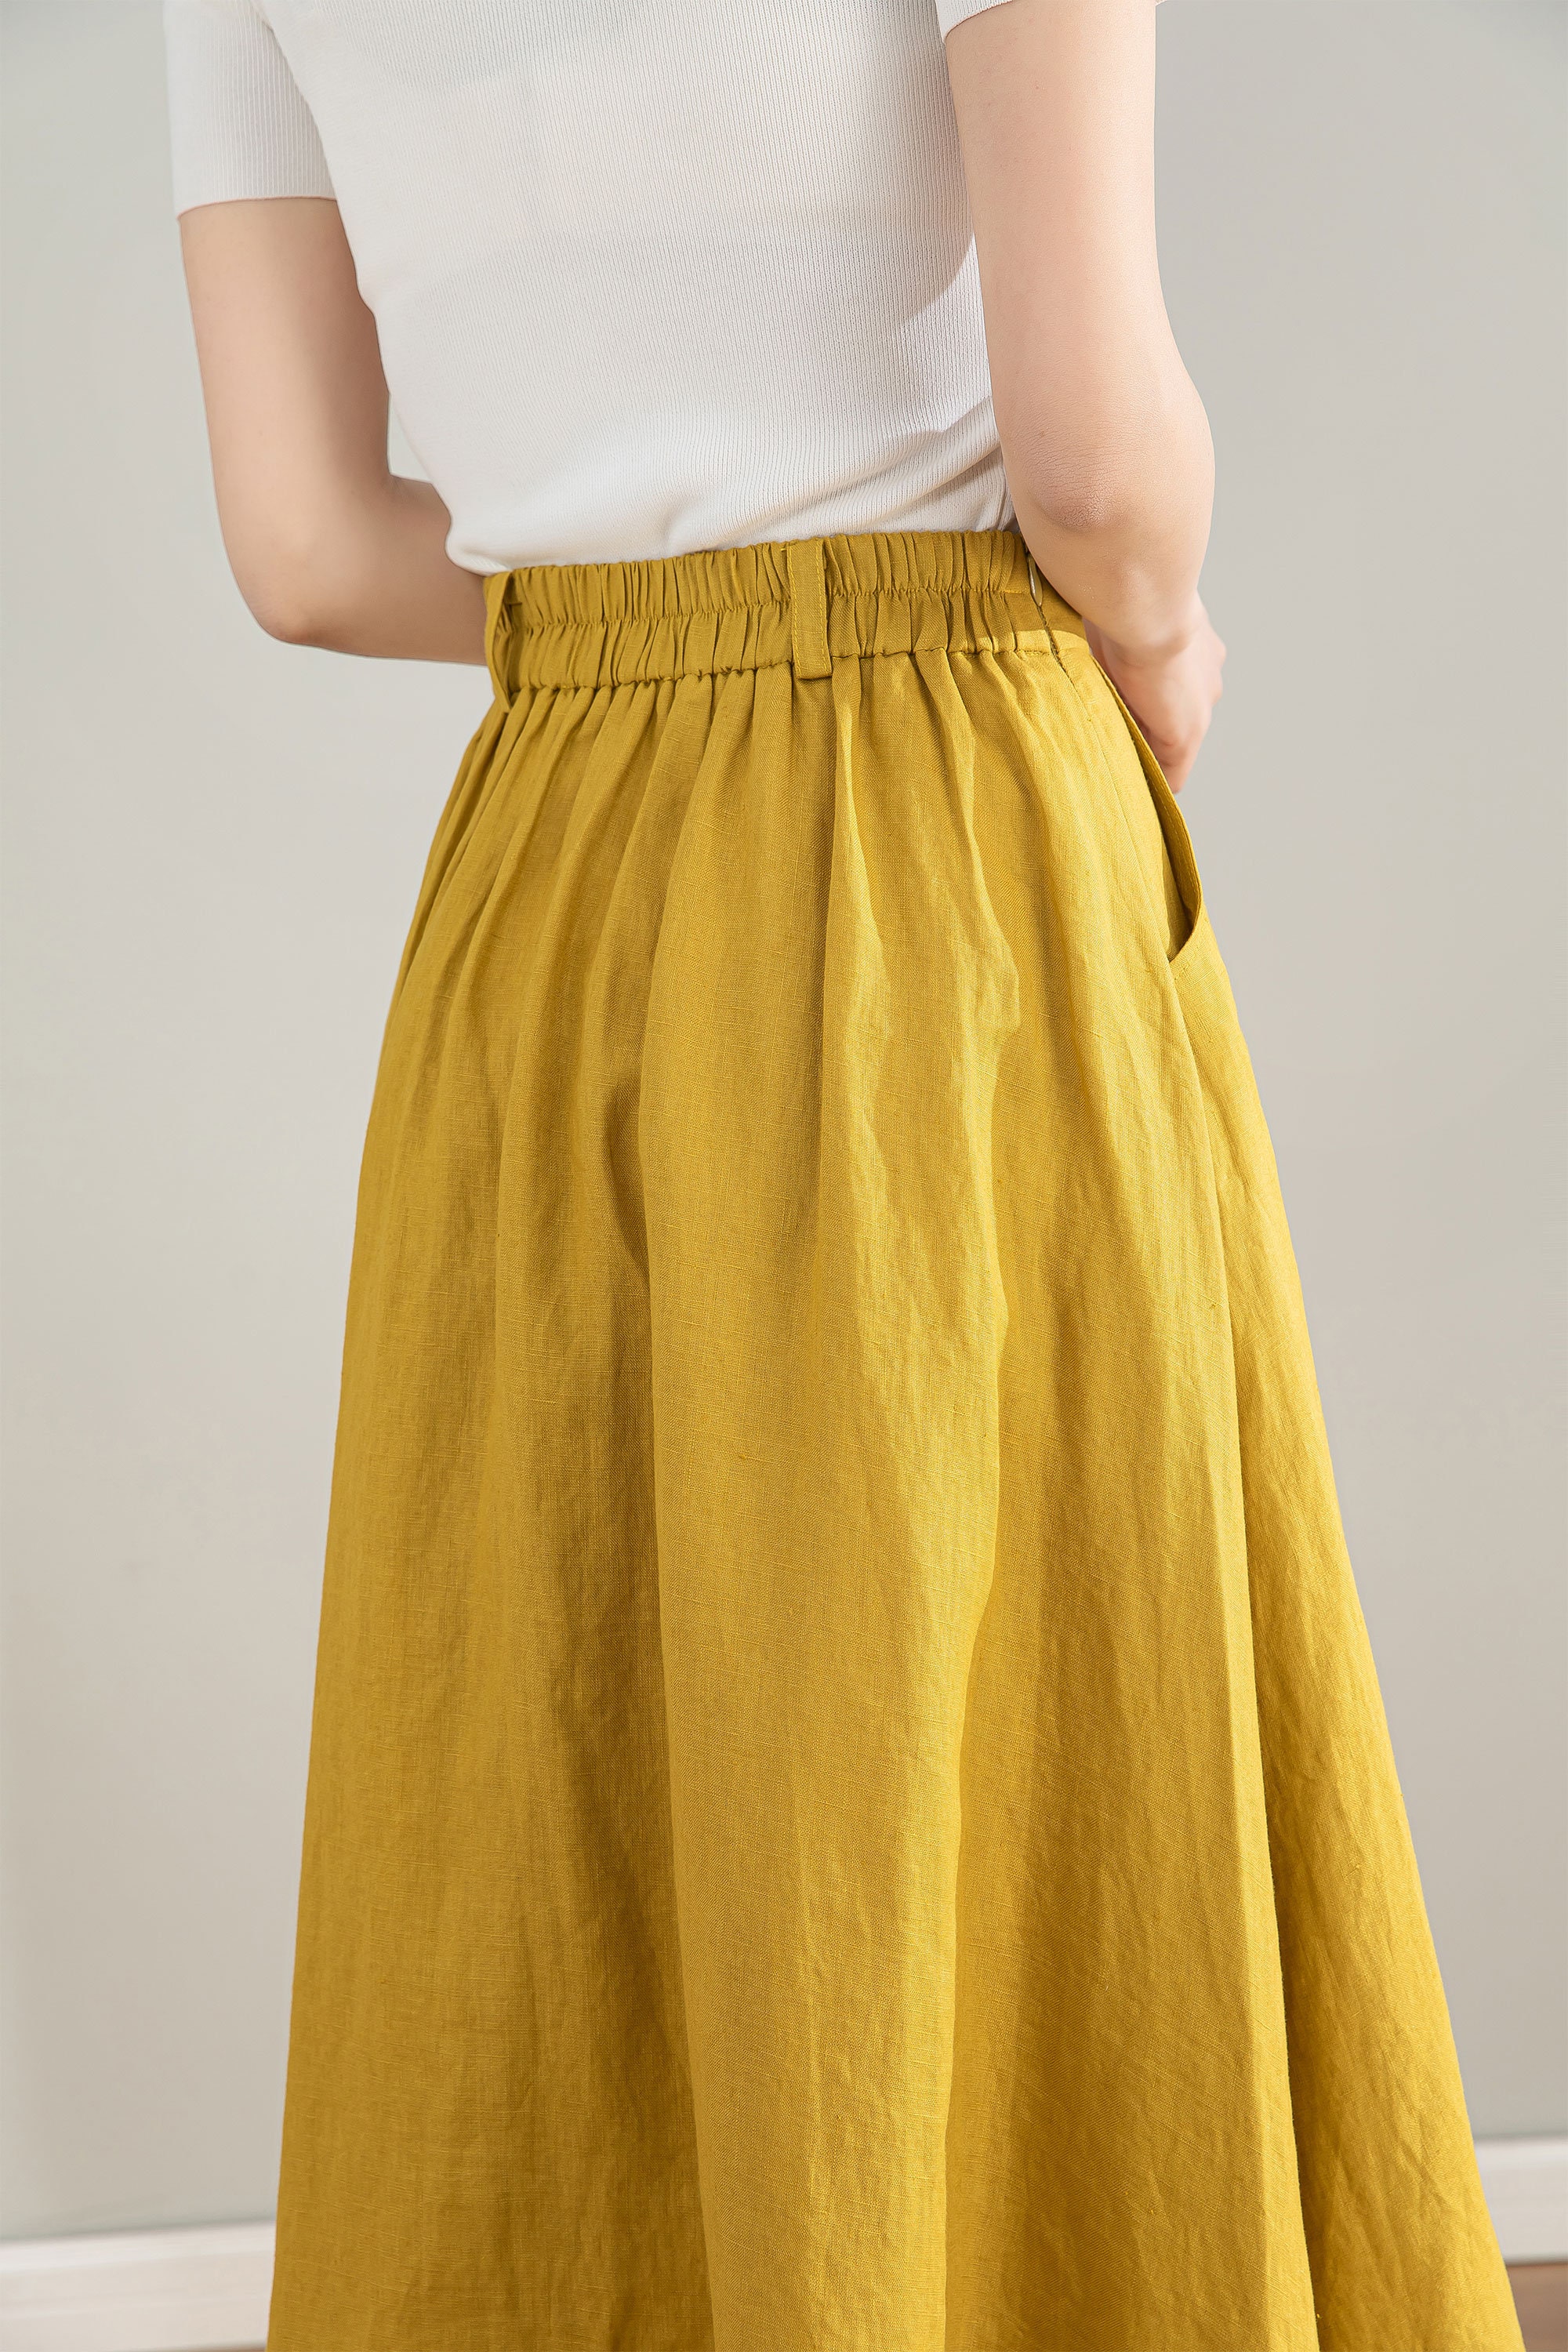 Yellow Linen Skirt, Womens Linen Midi Skirt, Button Front Skirt, A